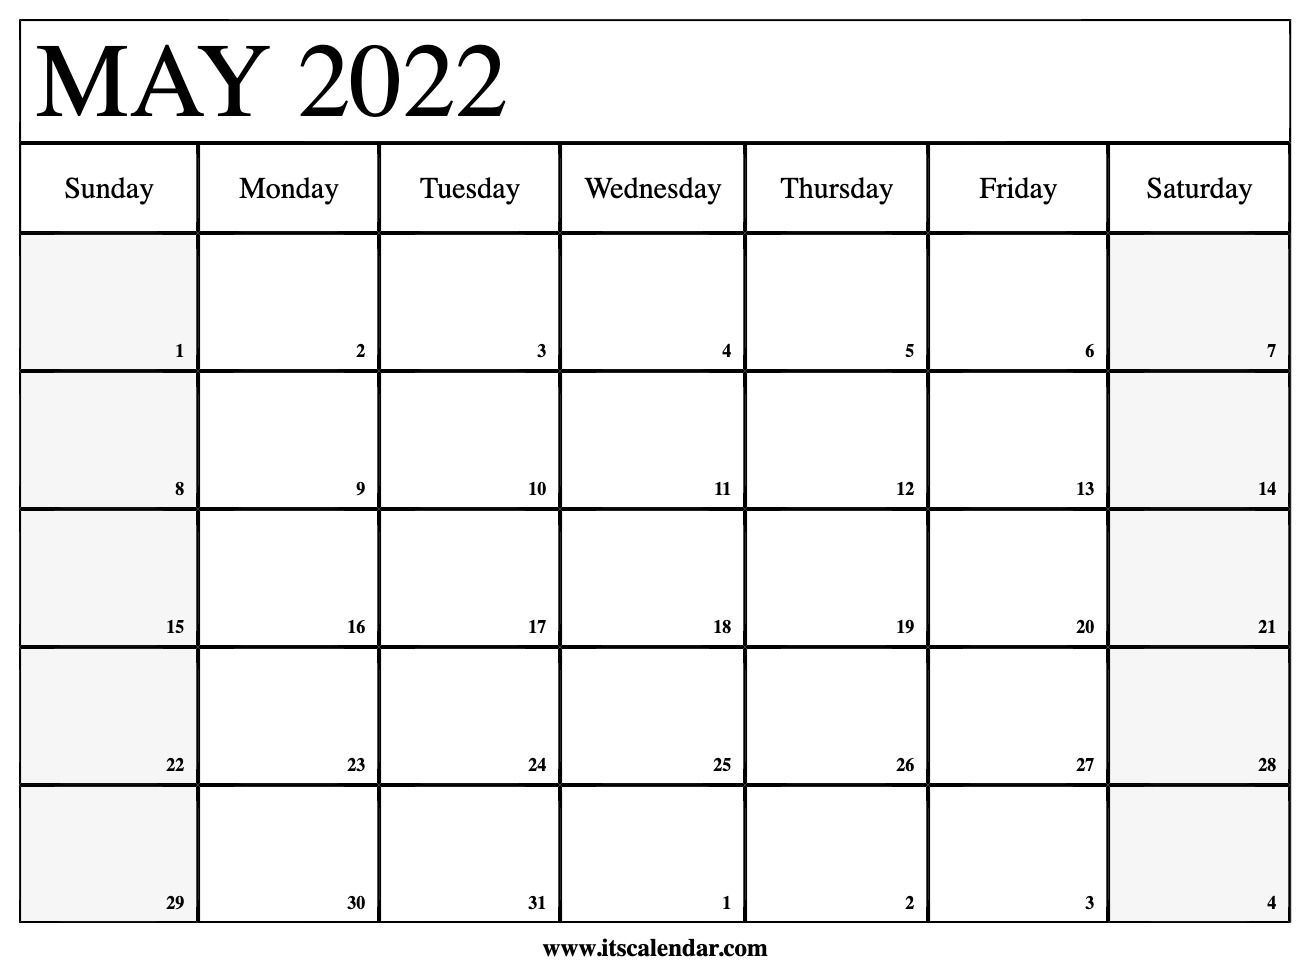 Mt Arlington Public School 2022 Calendar - May Calendar 2022